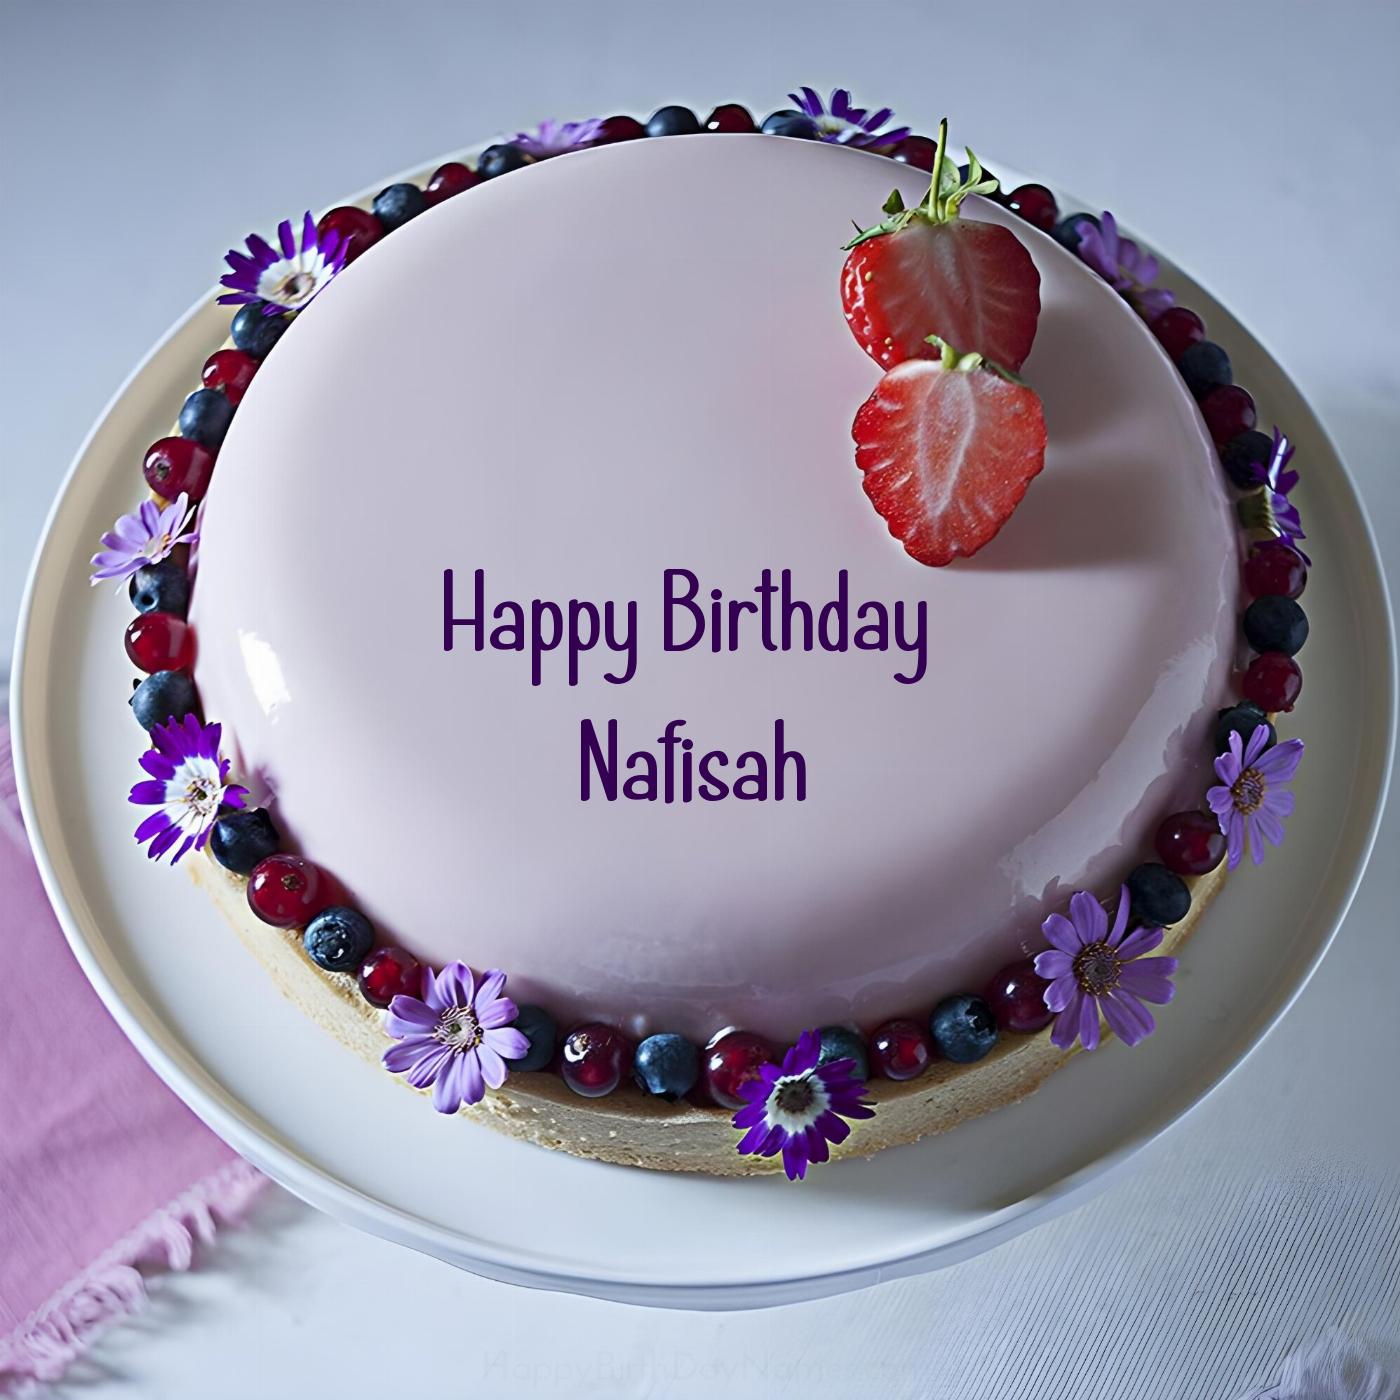 Happy Birthday Nafisah Strawberry Flowers Cake